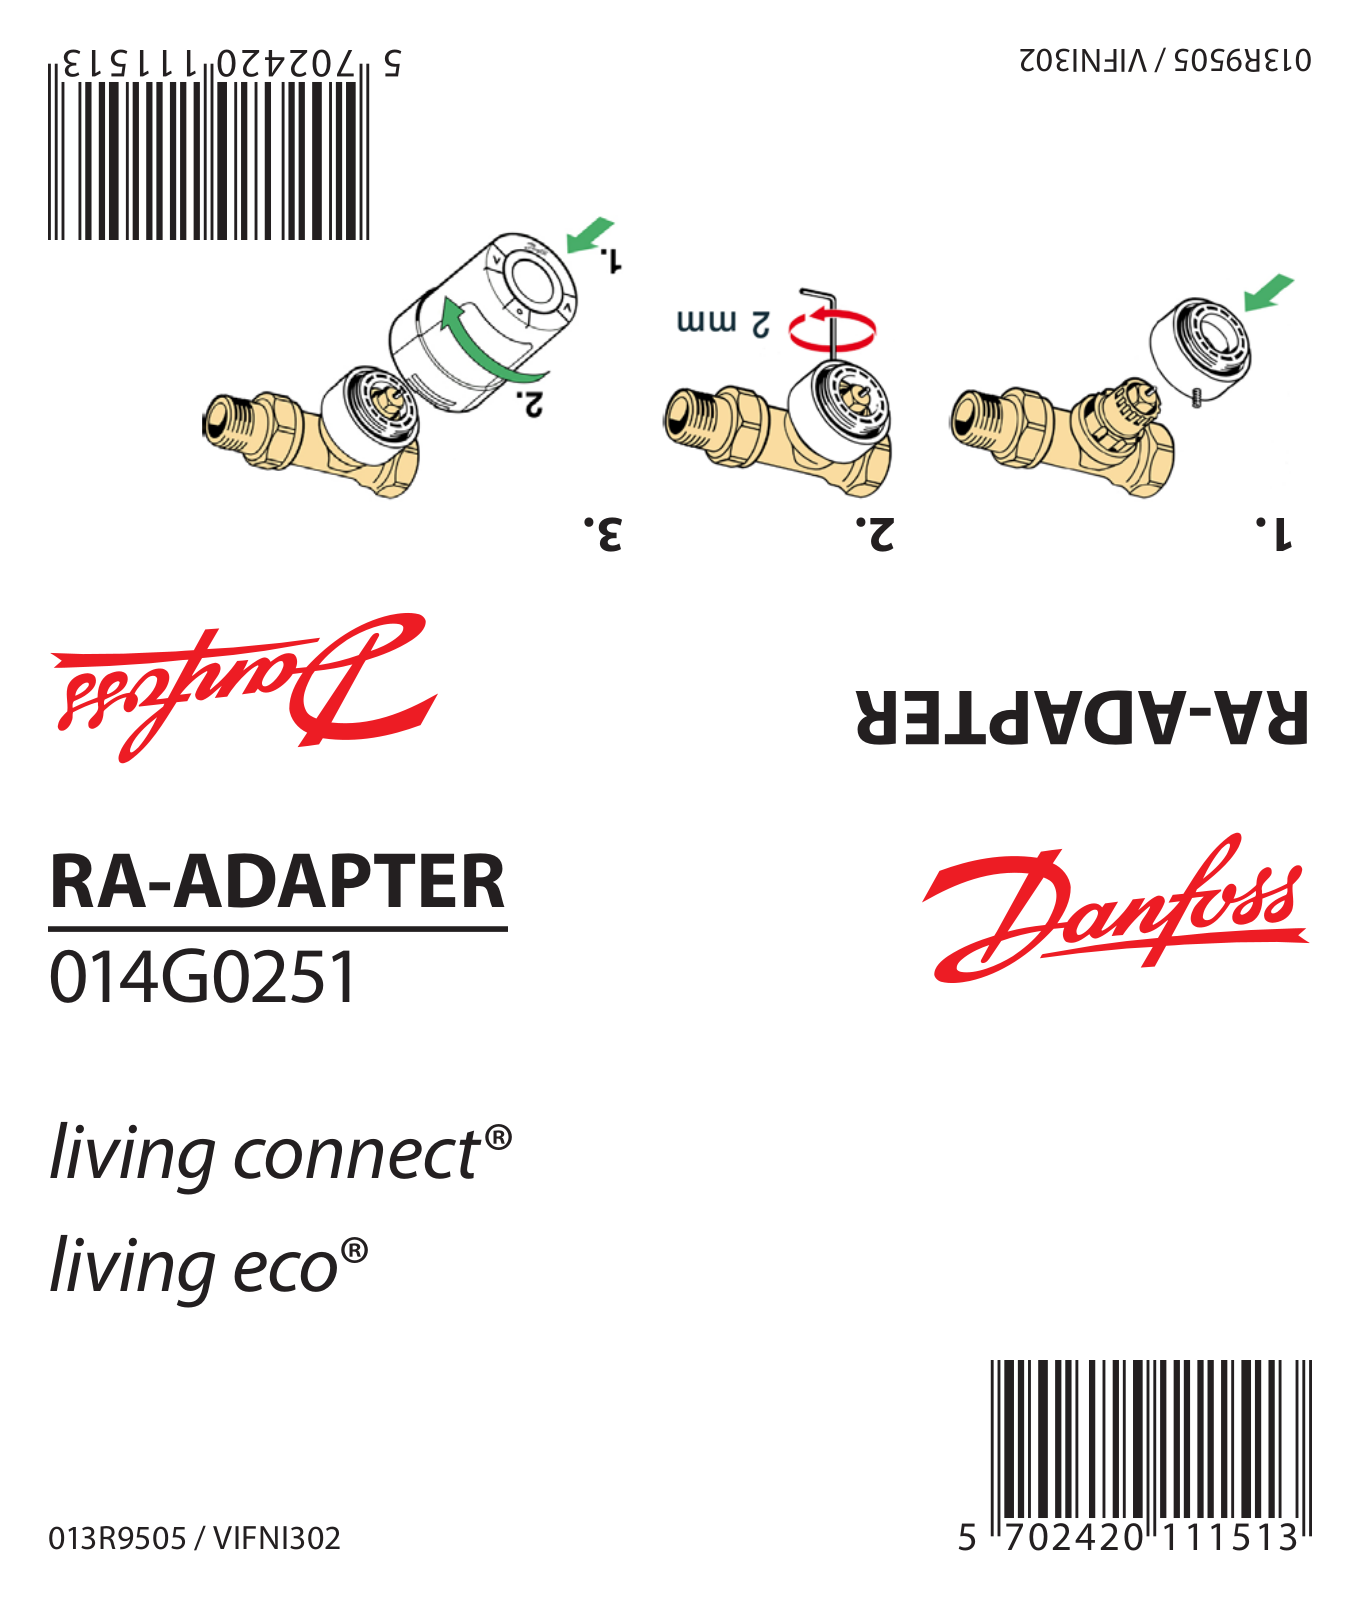 Danfoss RA-ADAPTER Installation guide